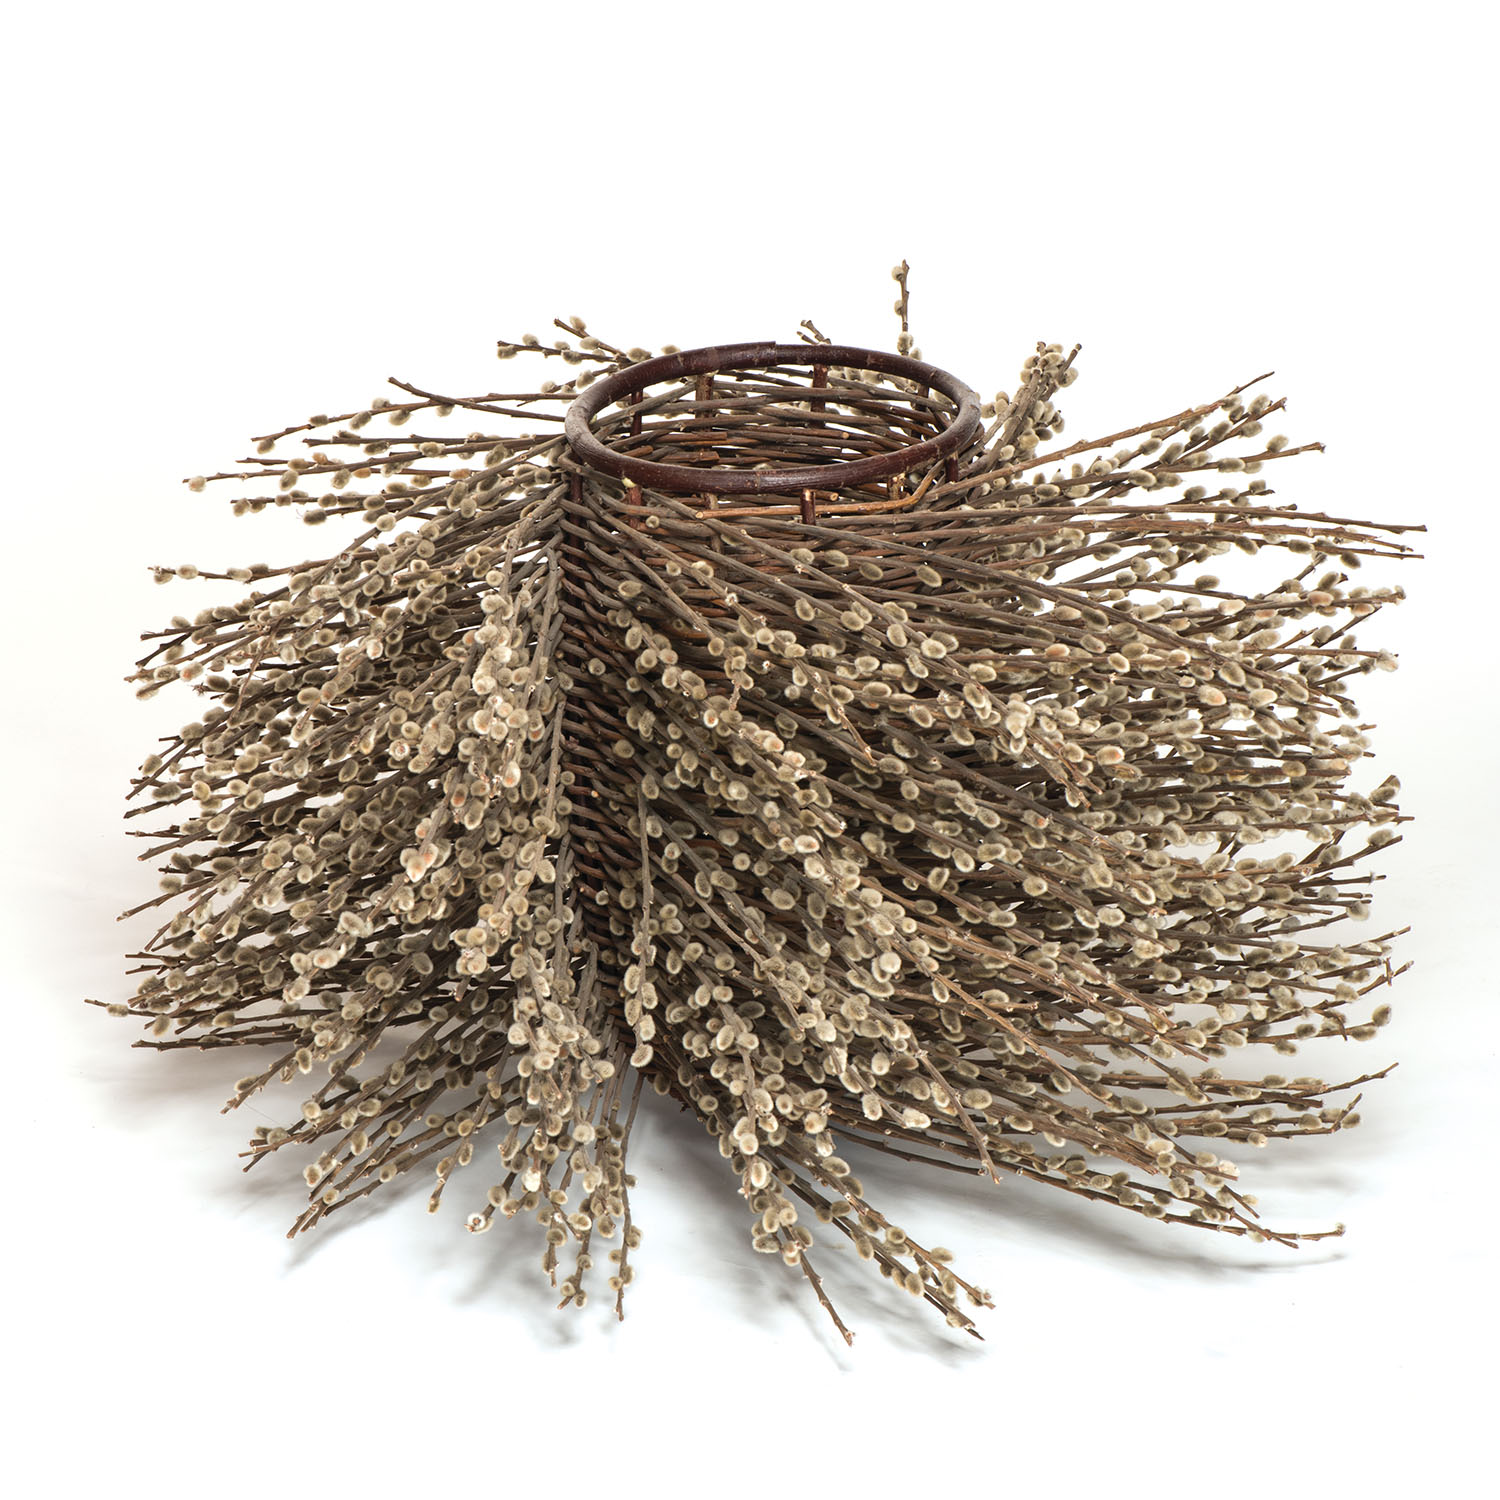 Bushy Willow basket by Markku Kosonen